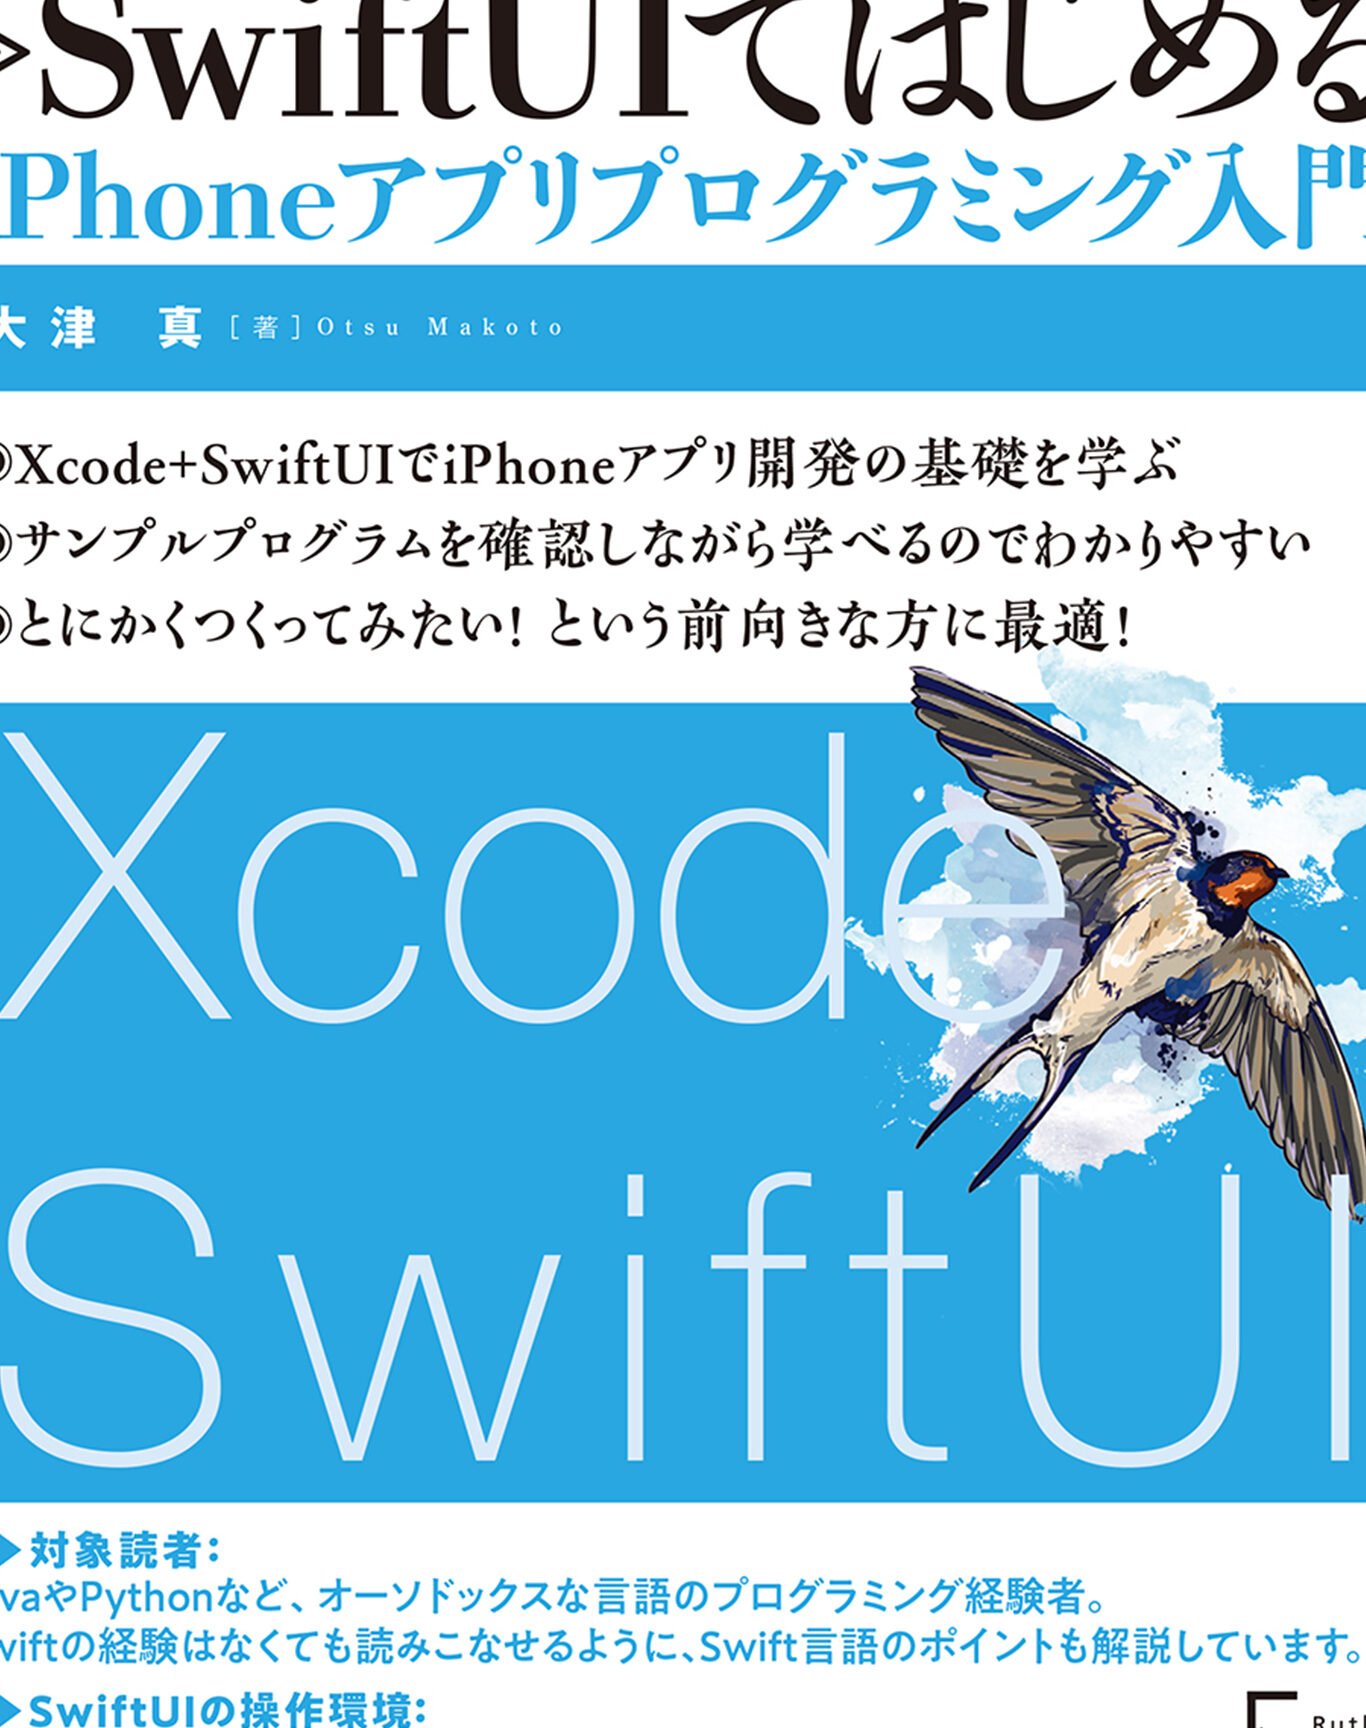 SwiftUIではじめるiPhoneアプリプログラミング入門 - 大津真 - 漫画 ...